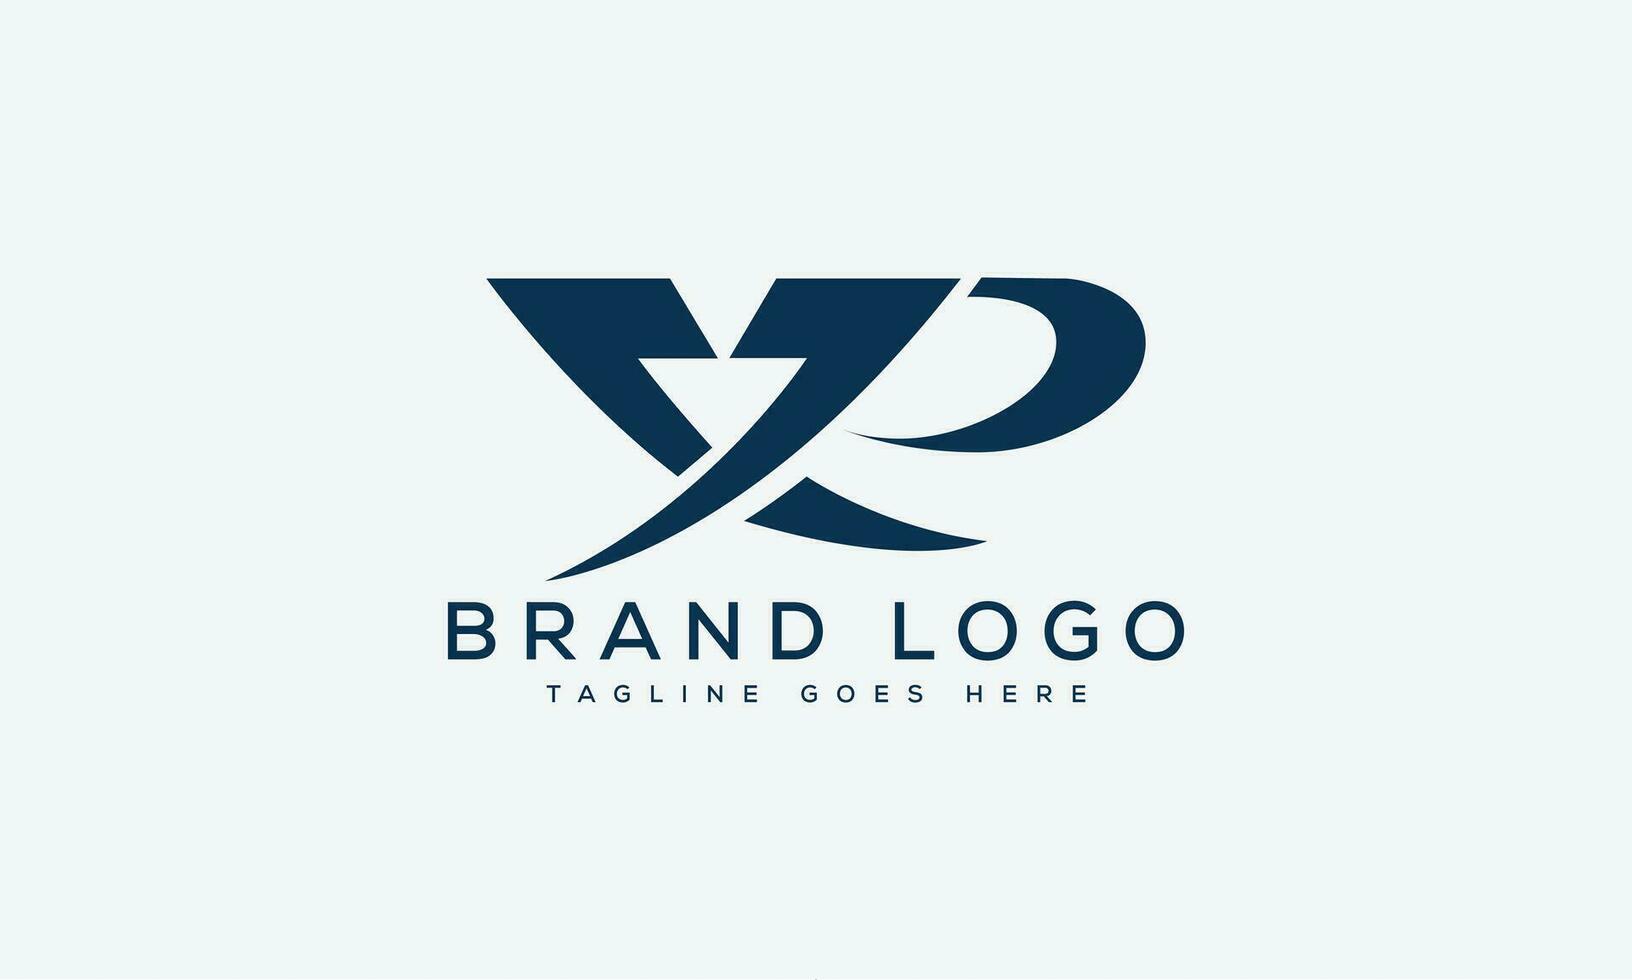 brev xp logotyp design vektor mall design för varumärke.